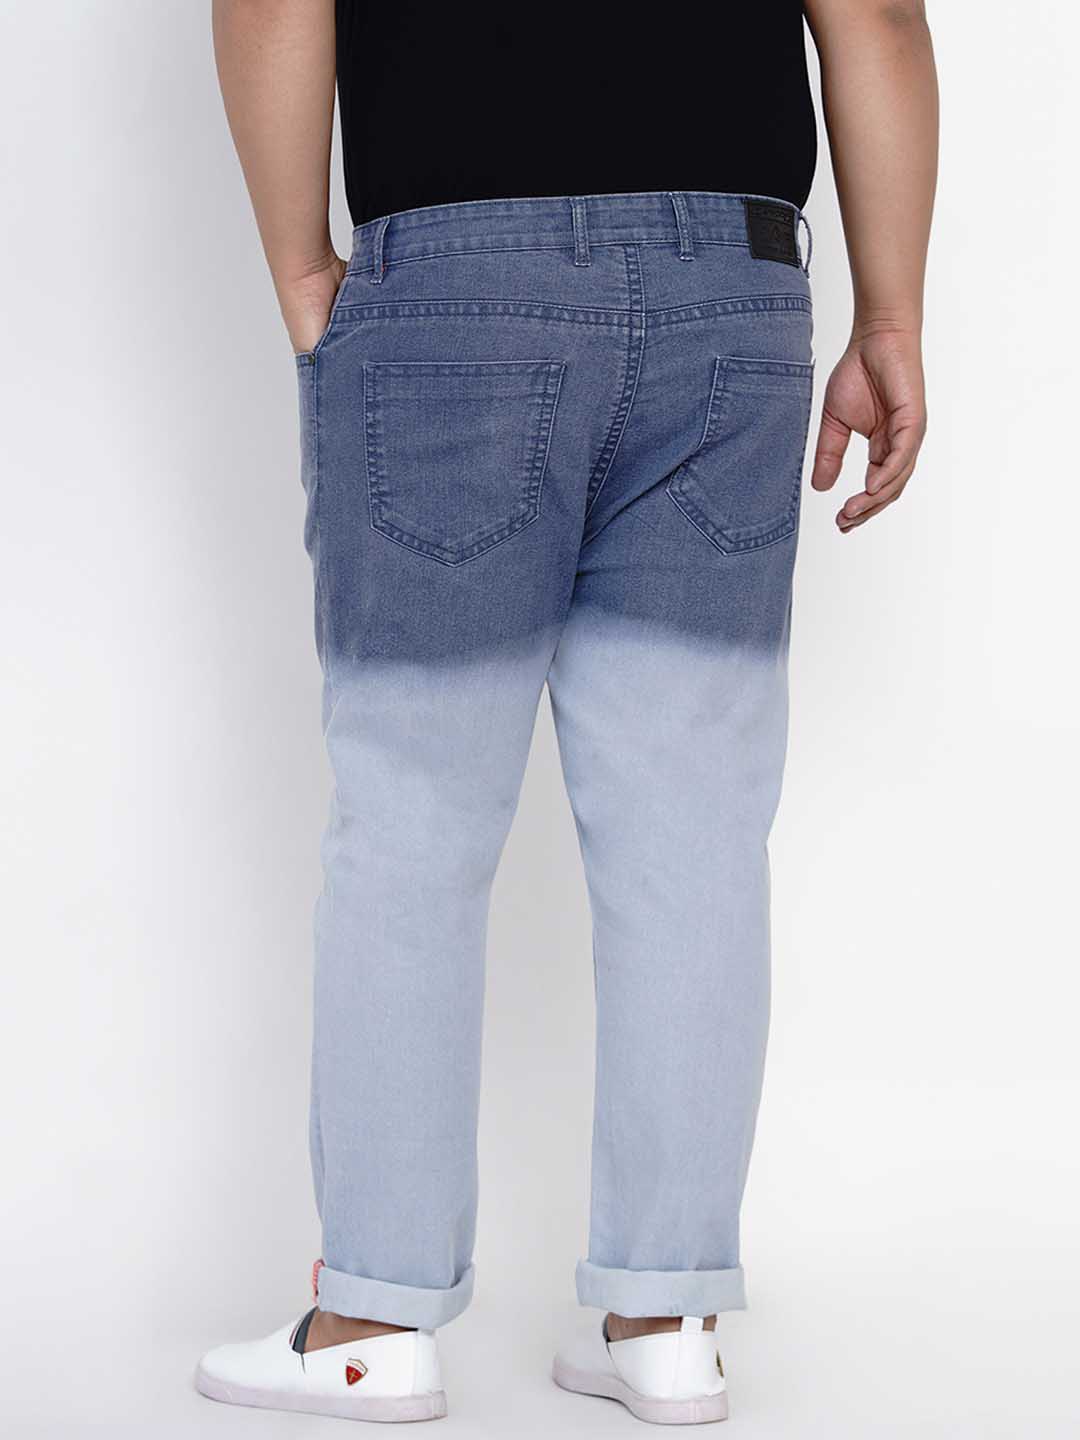 bottomwear/jeans/JPJ6004/jpj6004-4.jpg